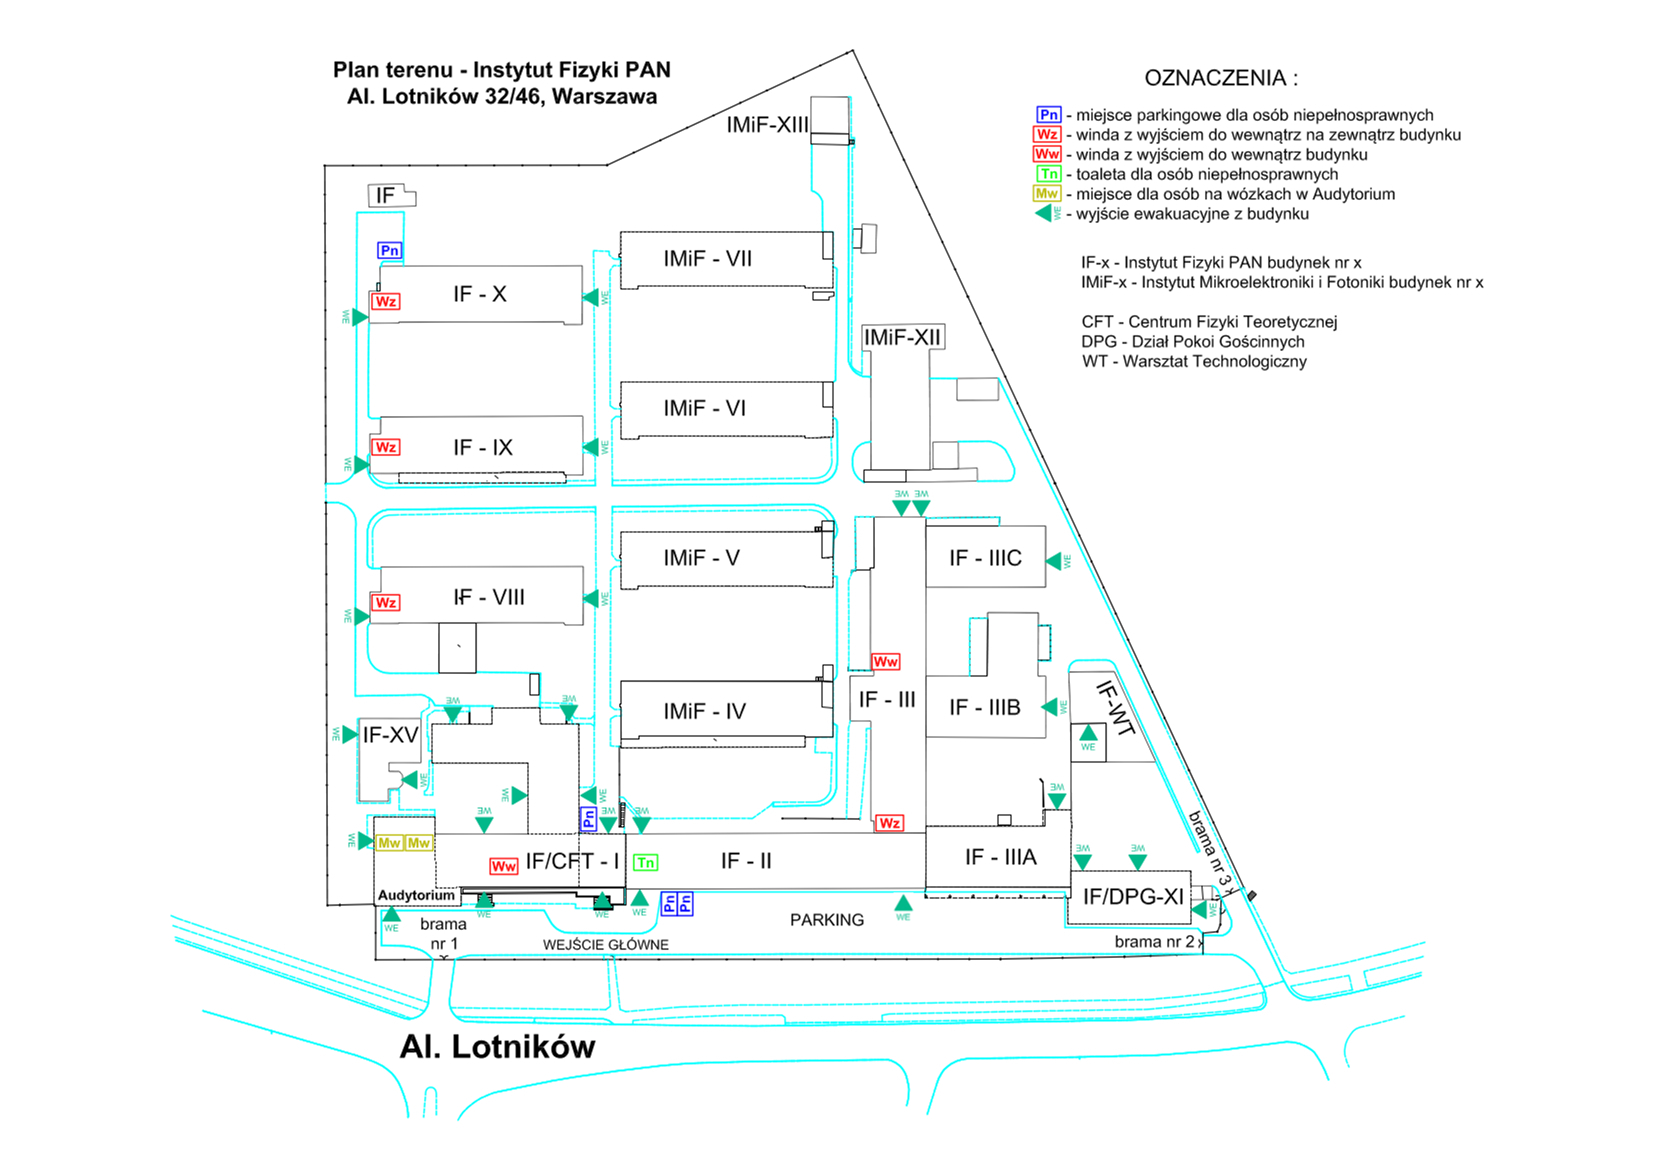 Plan terenu Instytutu